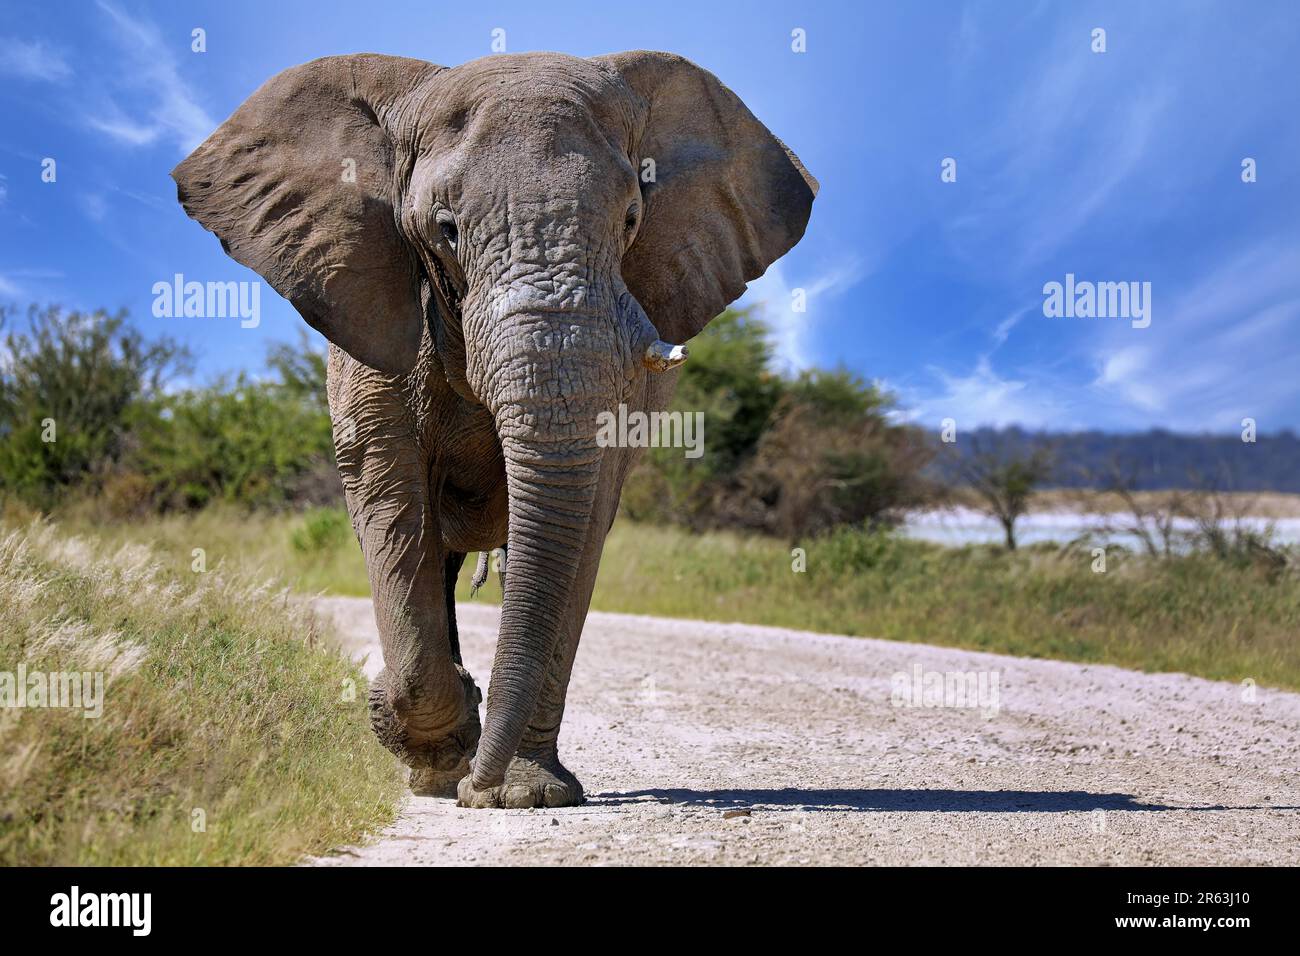 Elephant (Loxodonta africana) running at the street, Etosha National Park, Namibia Stock Photo